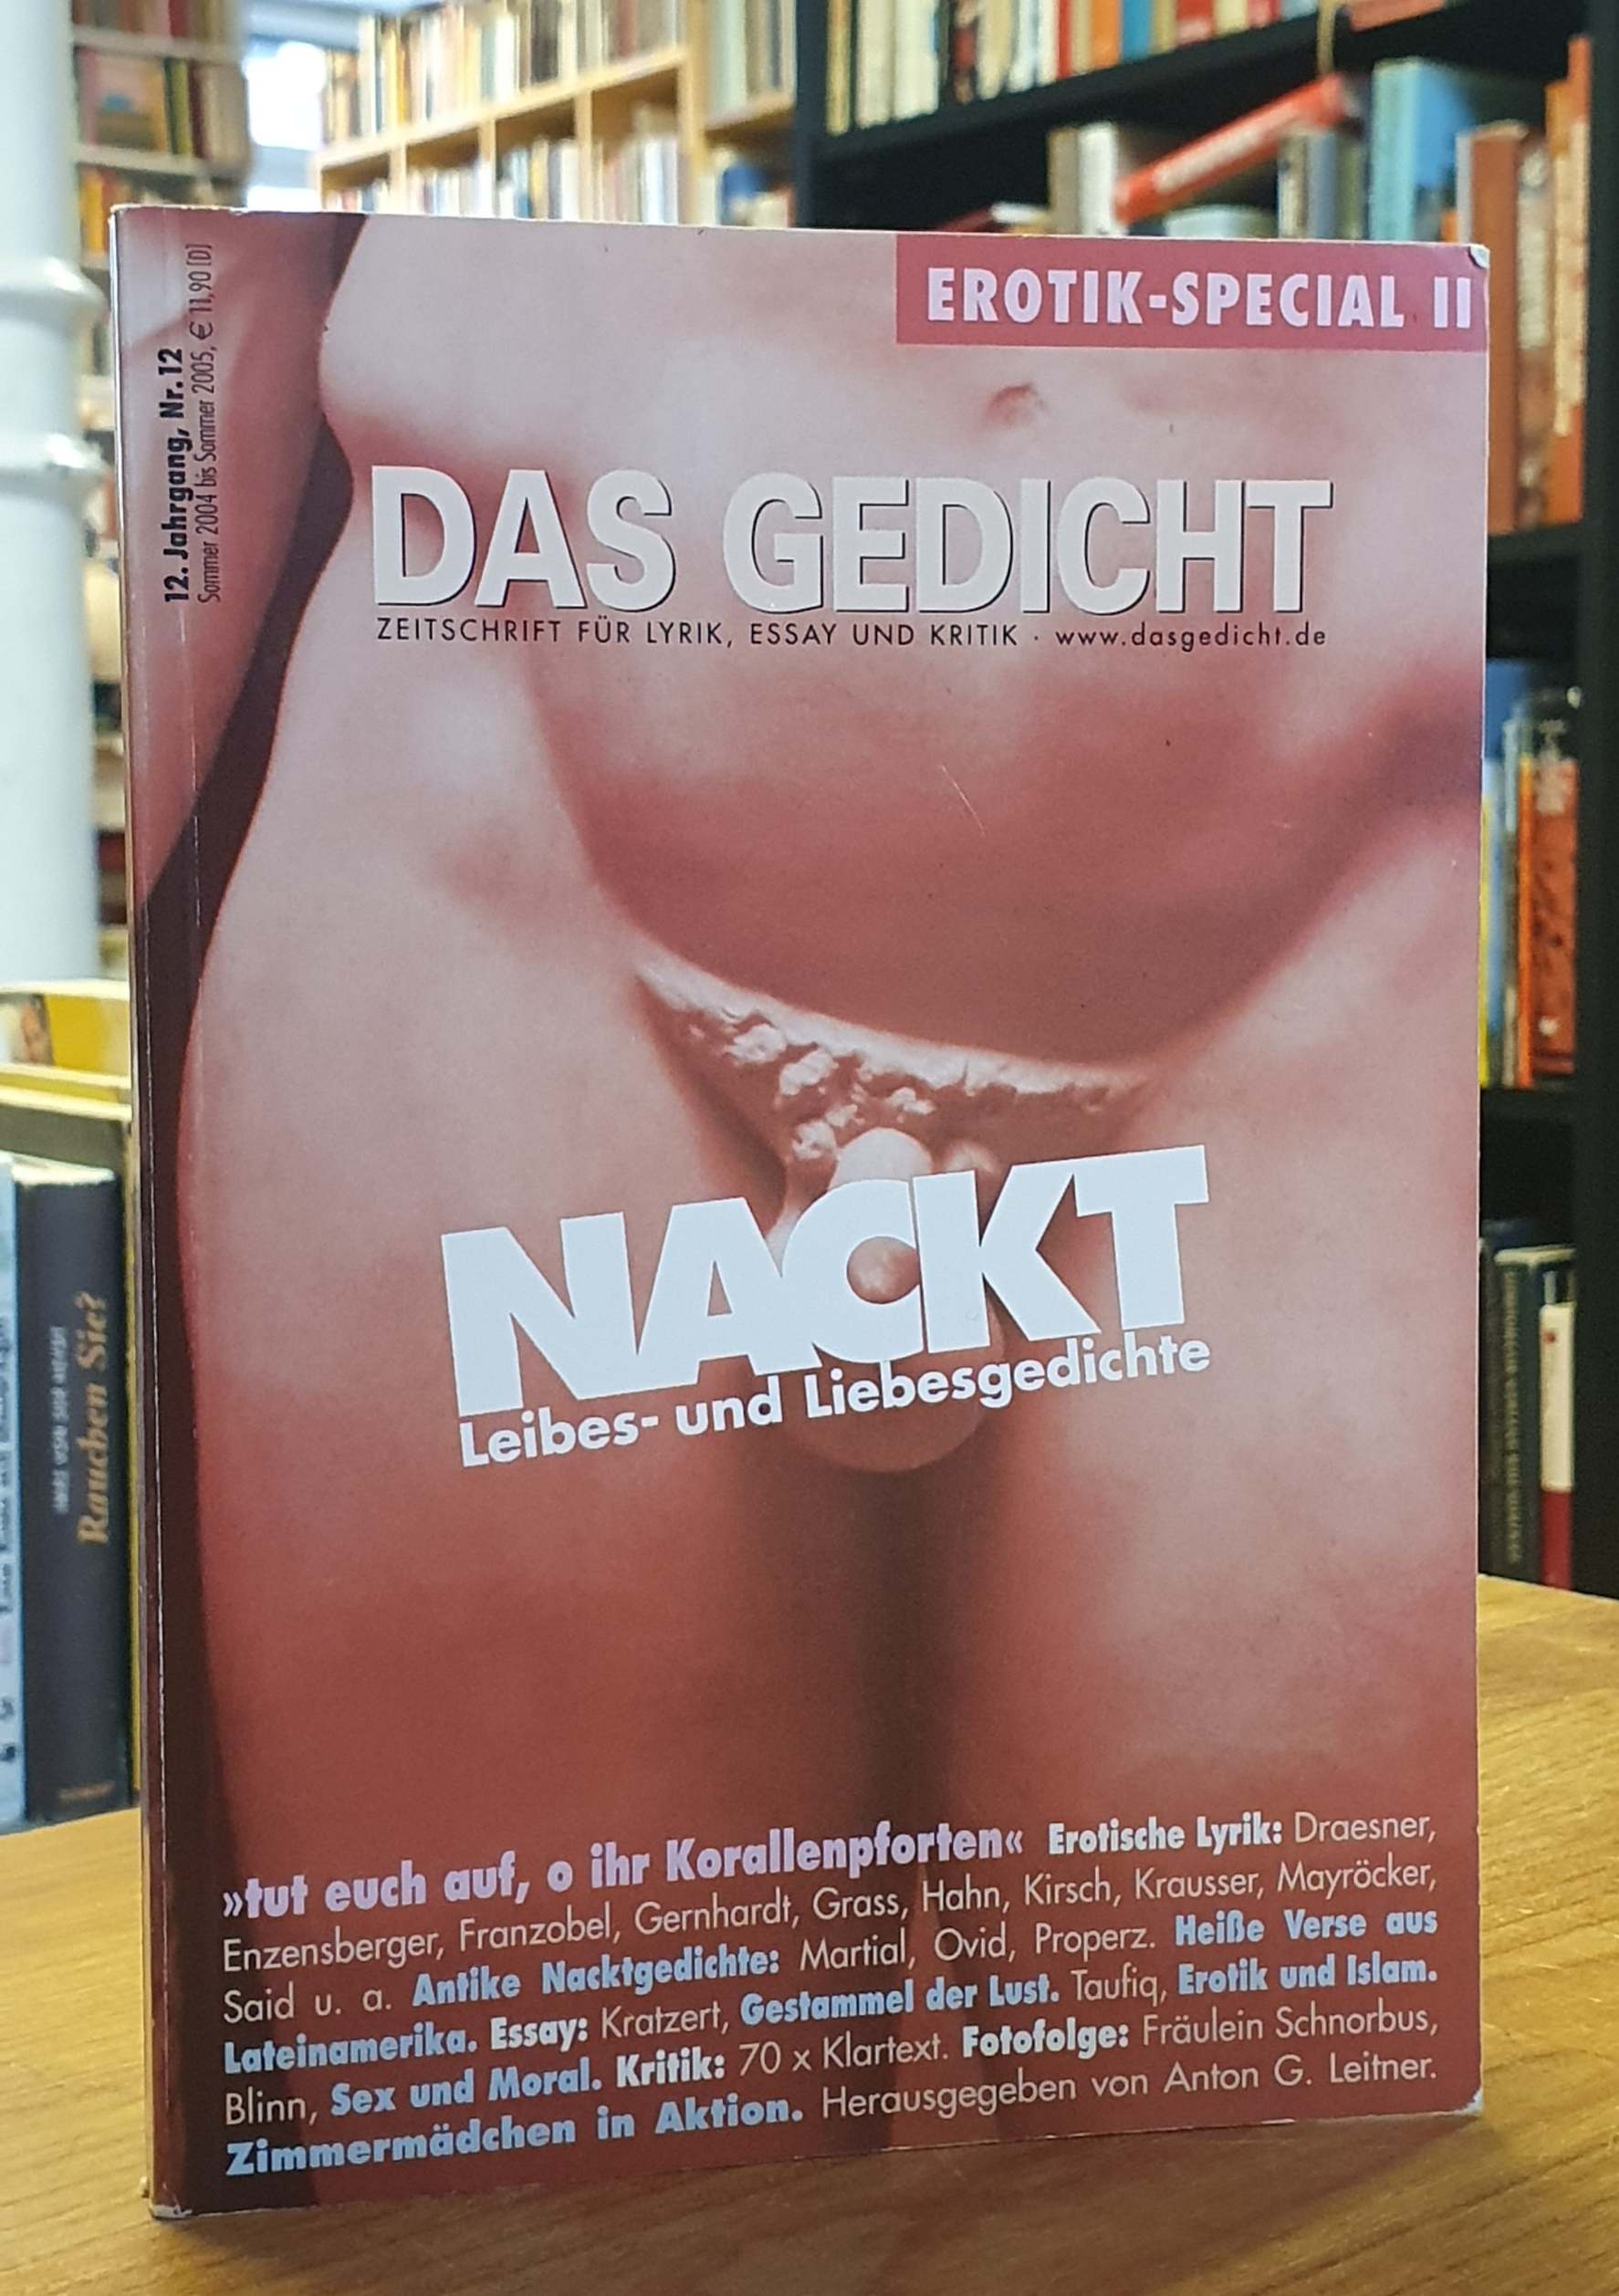 Das Gedicht Bd. 12 - Nackt - Leibes- und Liebesgedichte, - Leitner, Anton G. (Hrsg.),